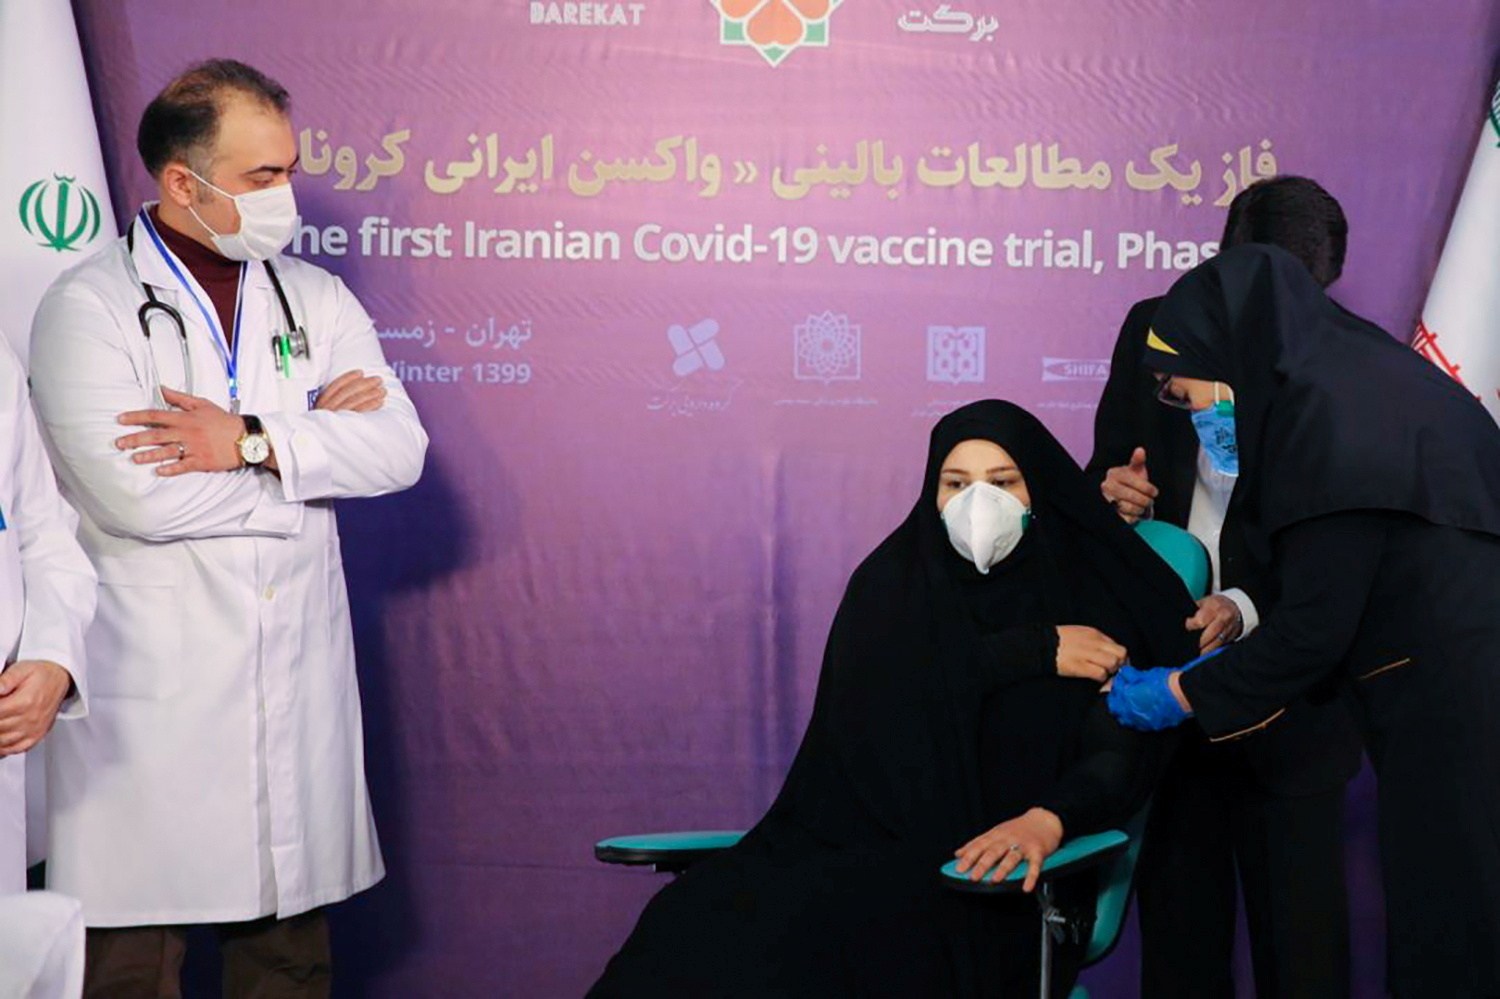 ¿Cómo relacionó este clérigo iraní la vacuna contra la COVID con la homosexualidad?